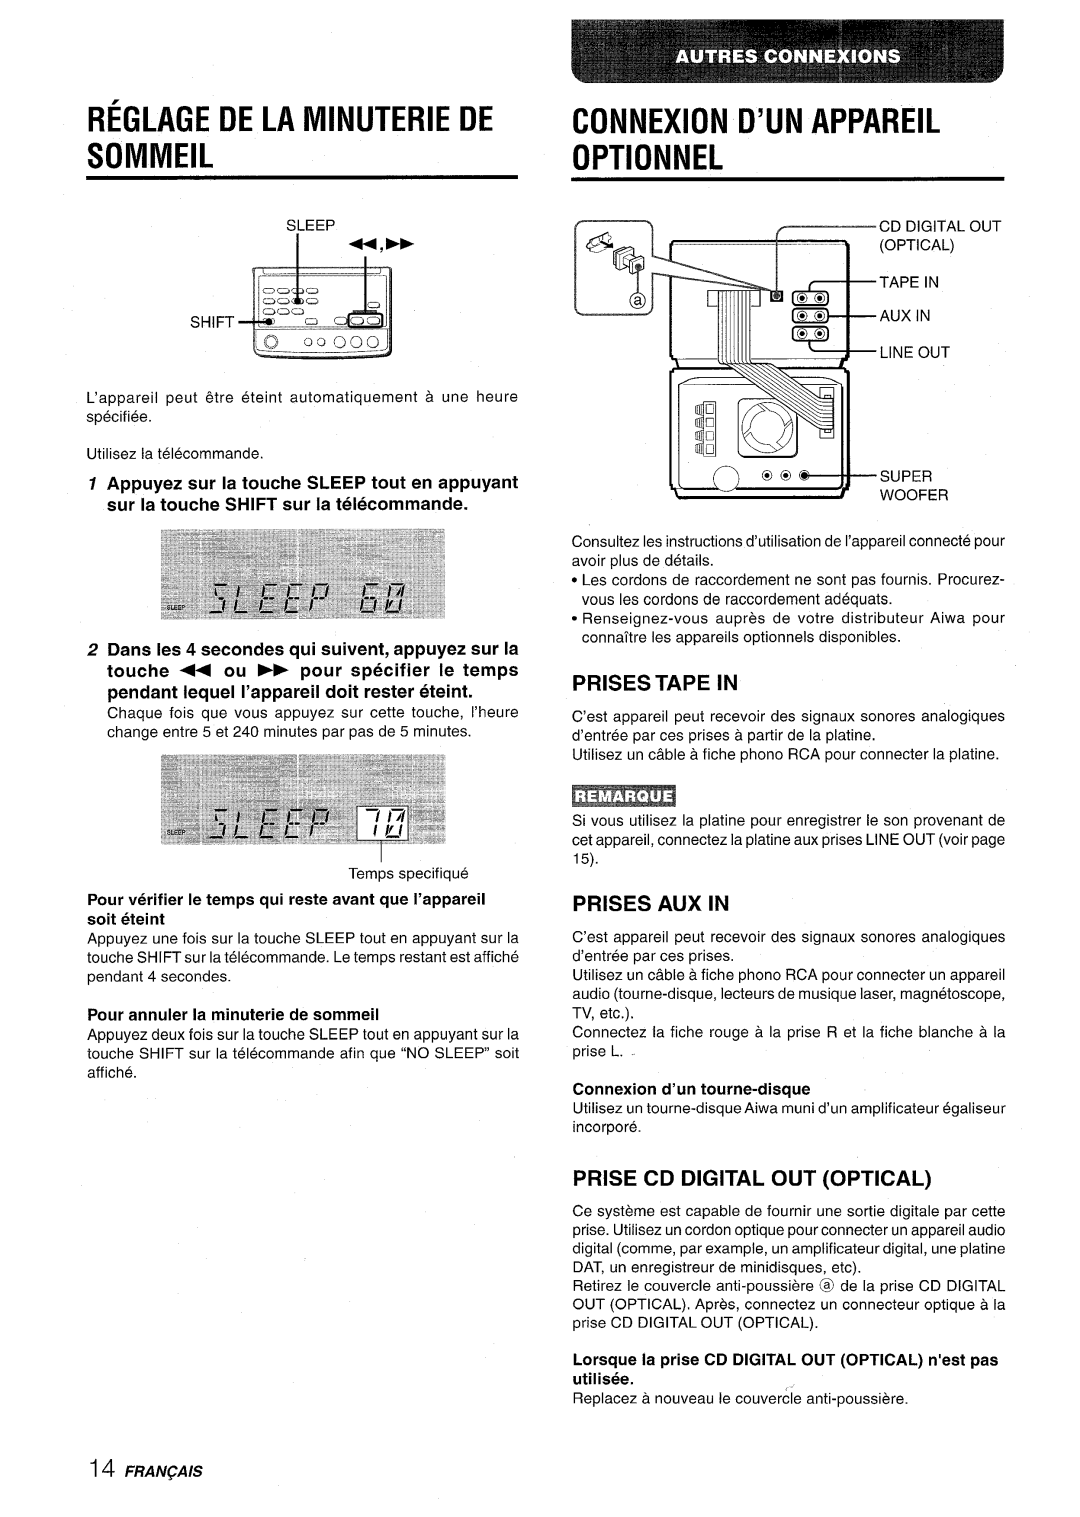 Aiwa XR-M70 manual Reglage De La Minuterie De Sommeil, Connexion, D’Un, Appareil, Optionnel, Prises Tape In, Prises Aux In 